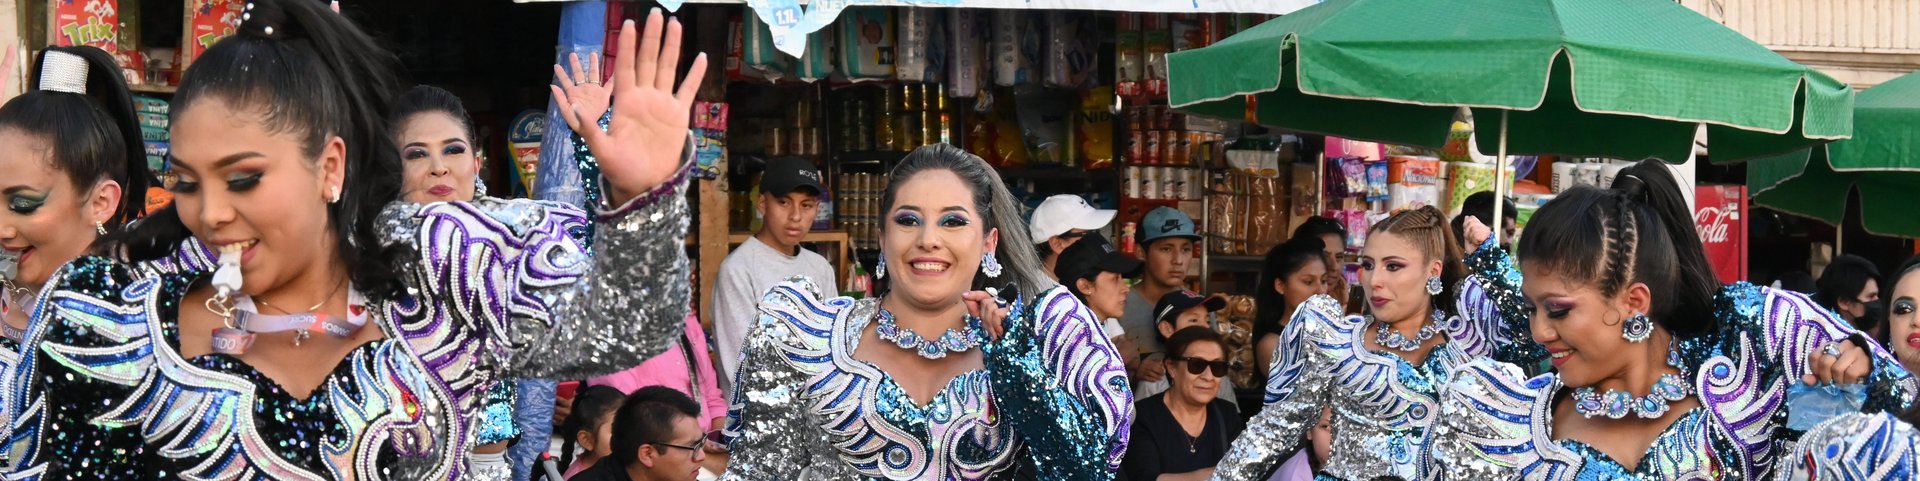 Tänzerinnen an der Fiesta de la Virgen de Guadalupe